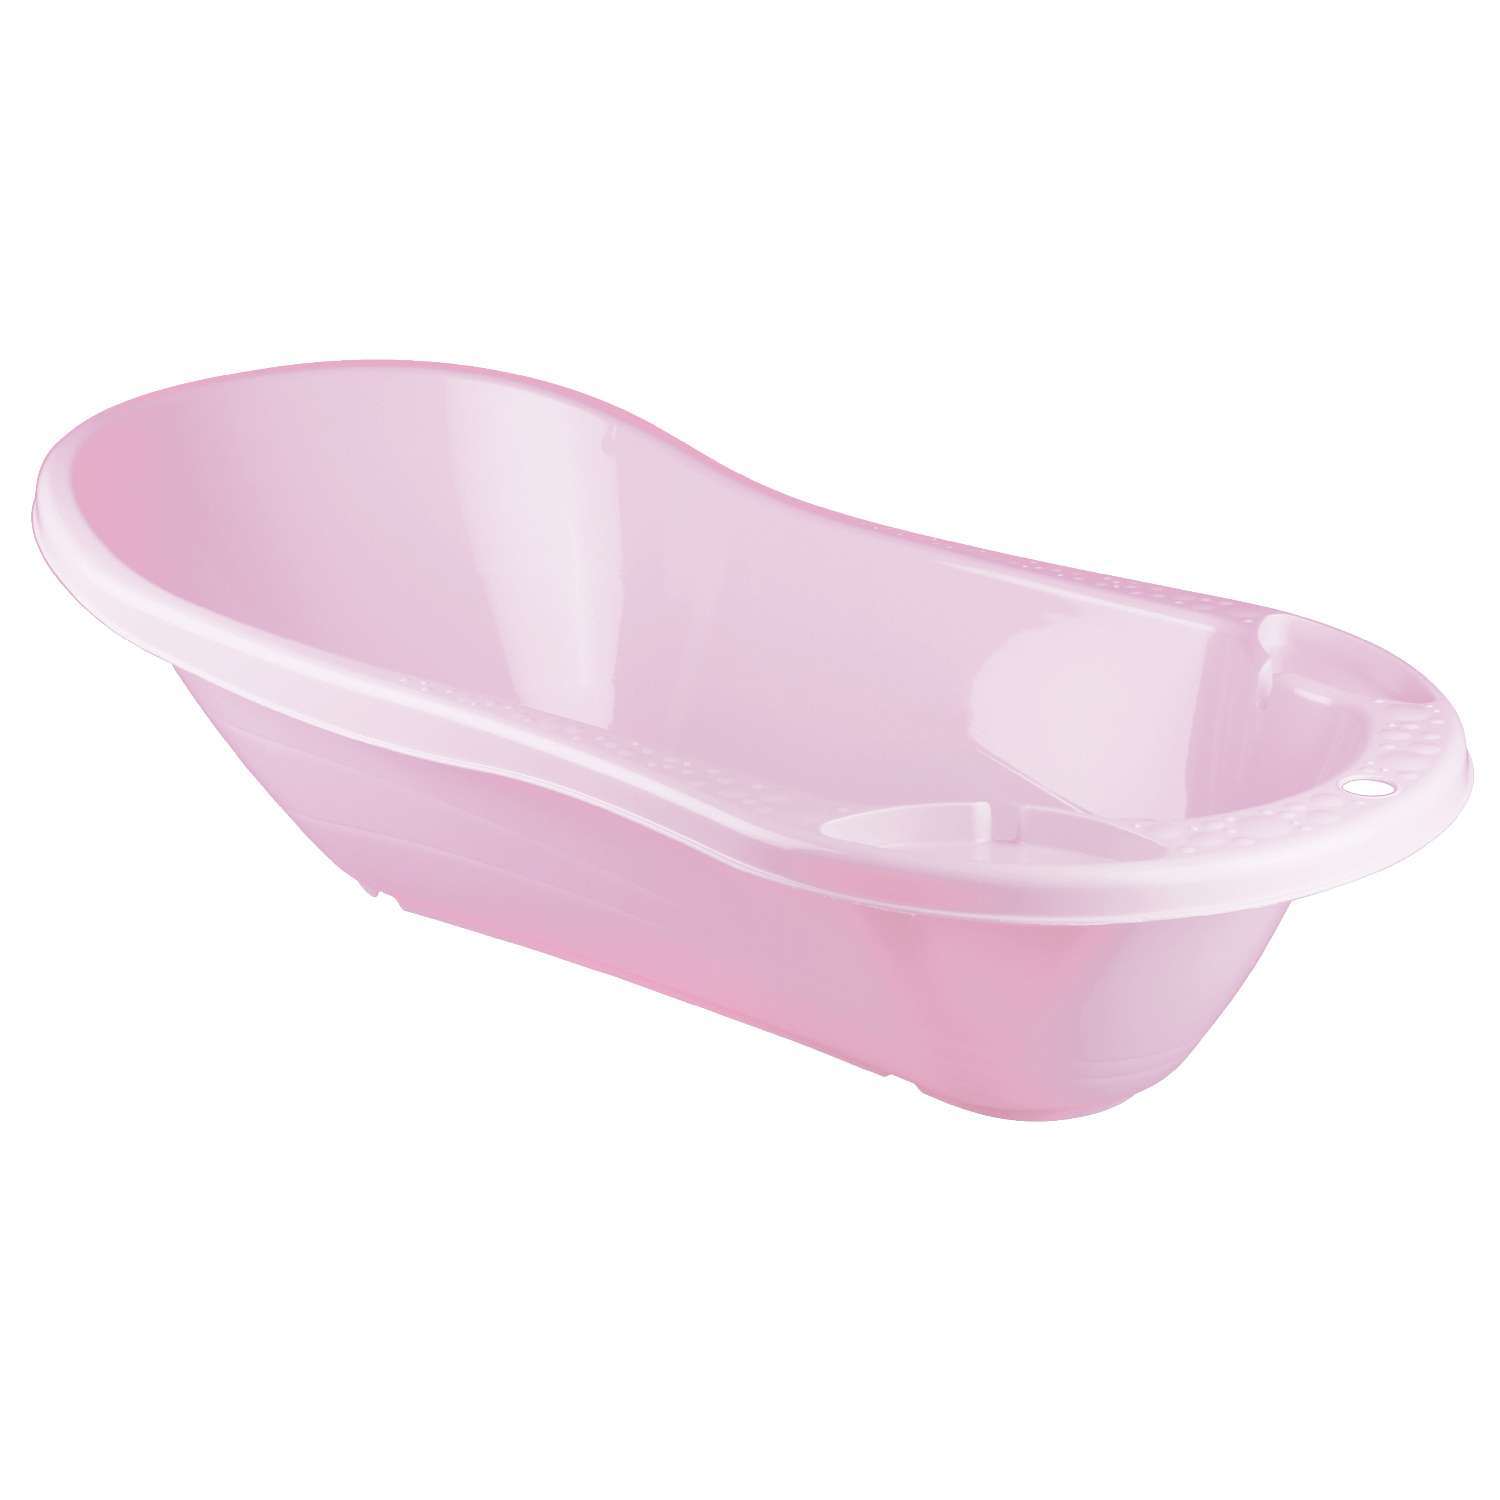 Ванна Пластишка с аппликацией и клапаном для слива воды розовая - фото 3